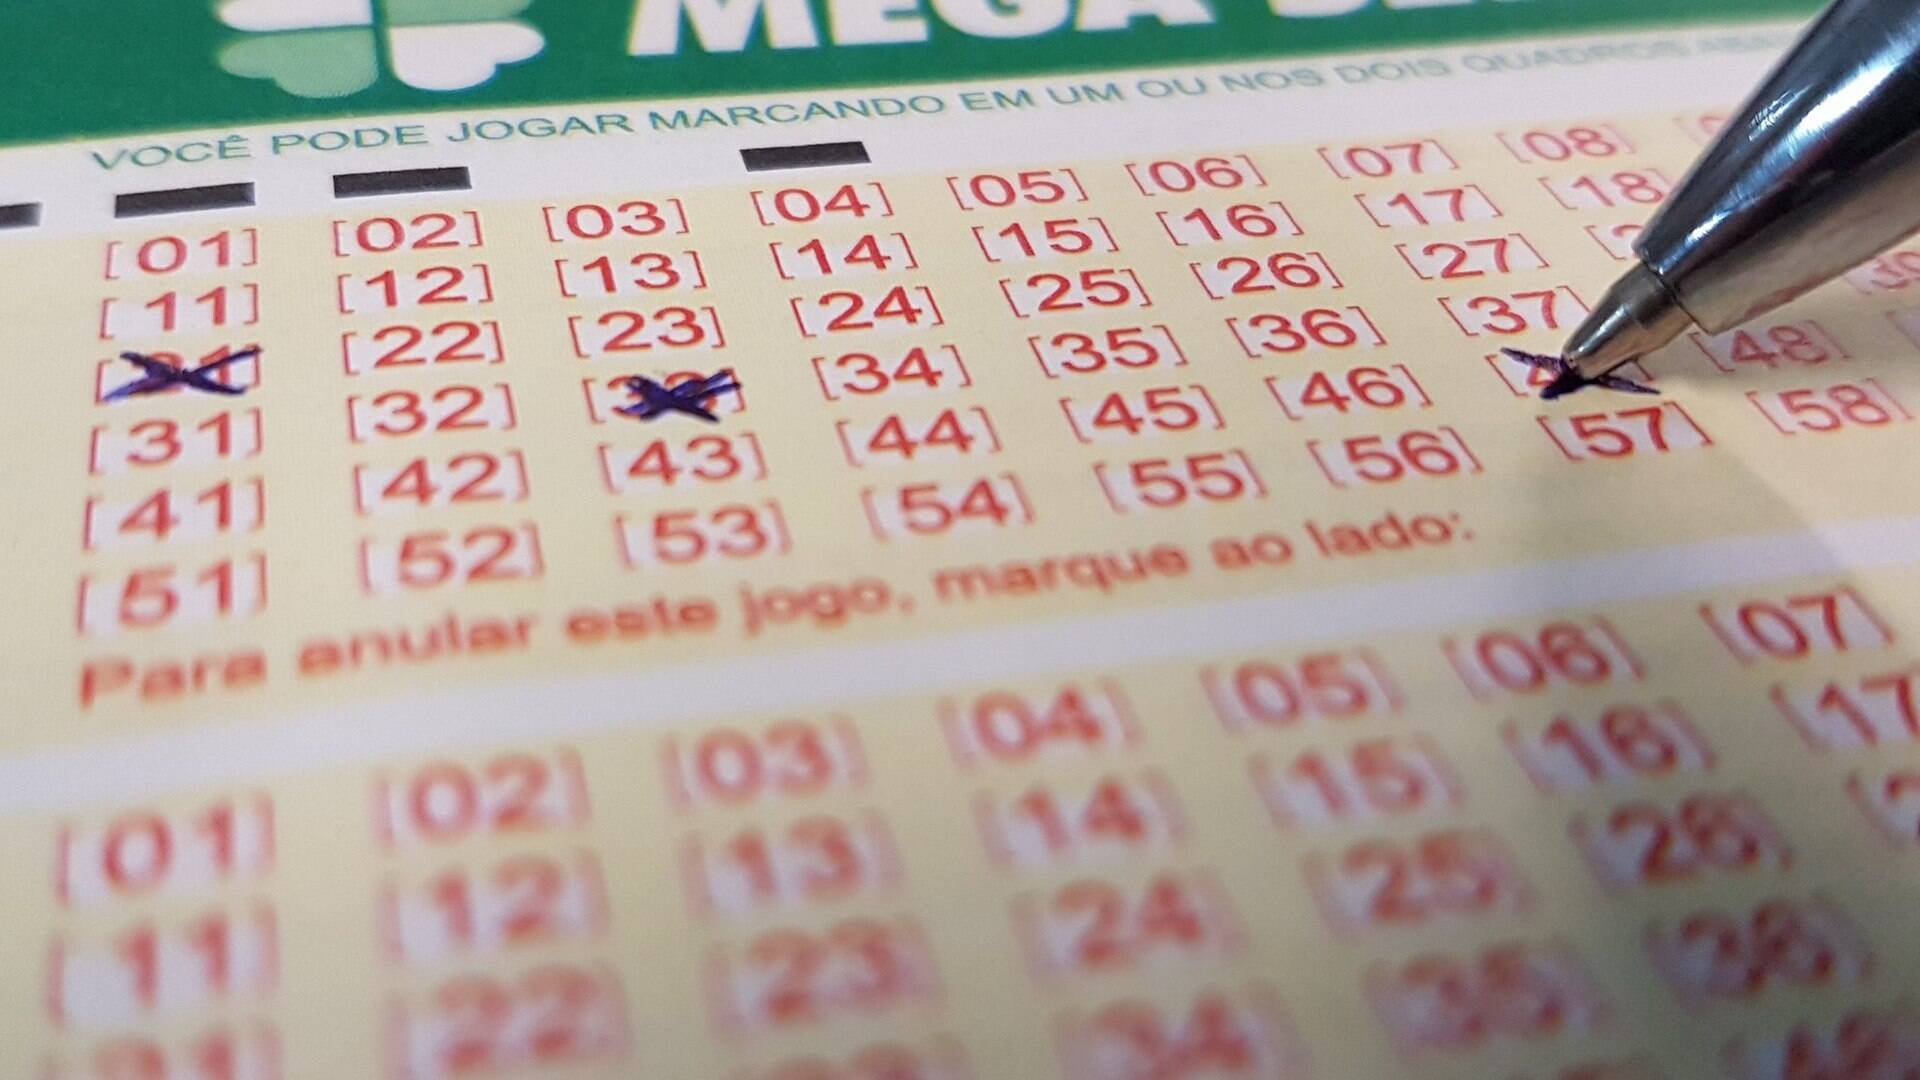 Qual a loteria mais fácil de ganhar? Aposte com mais chances